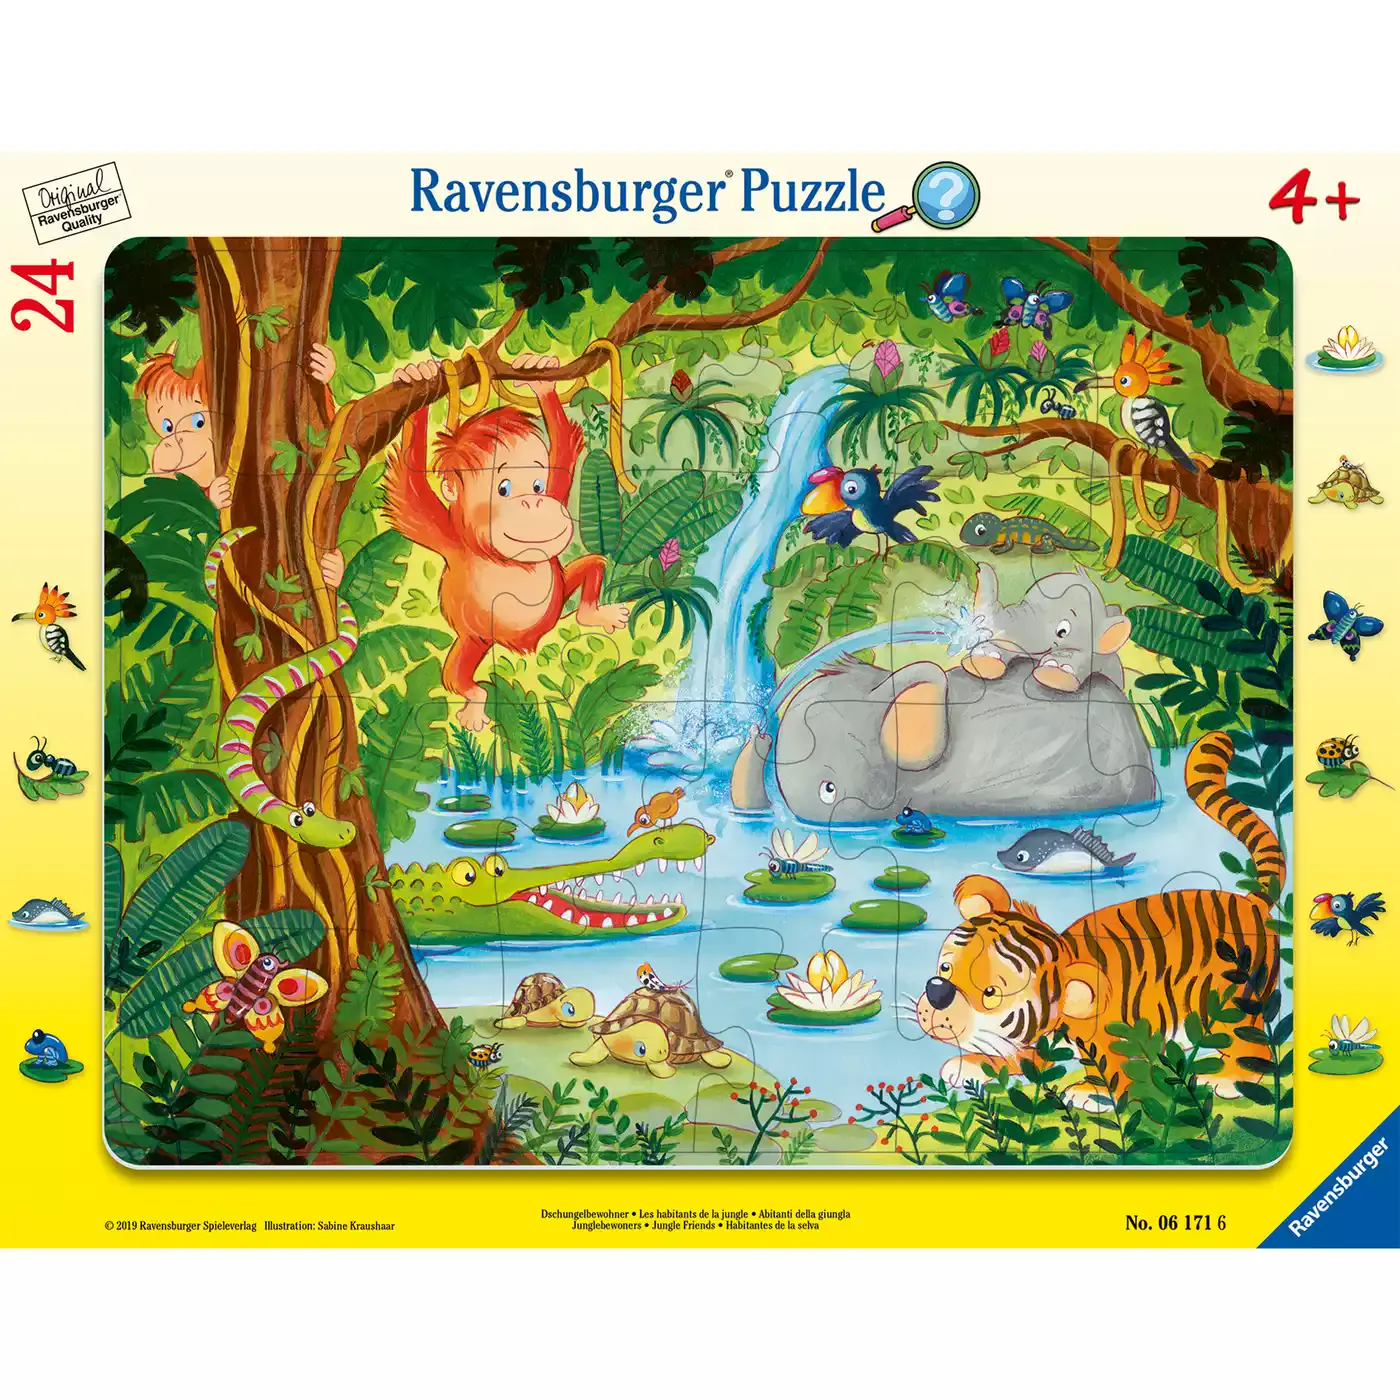 Kinderpuzzle Dschungelbewohner Ravensburger 2000578036003 1